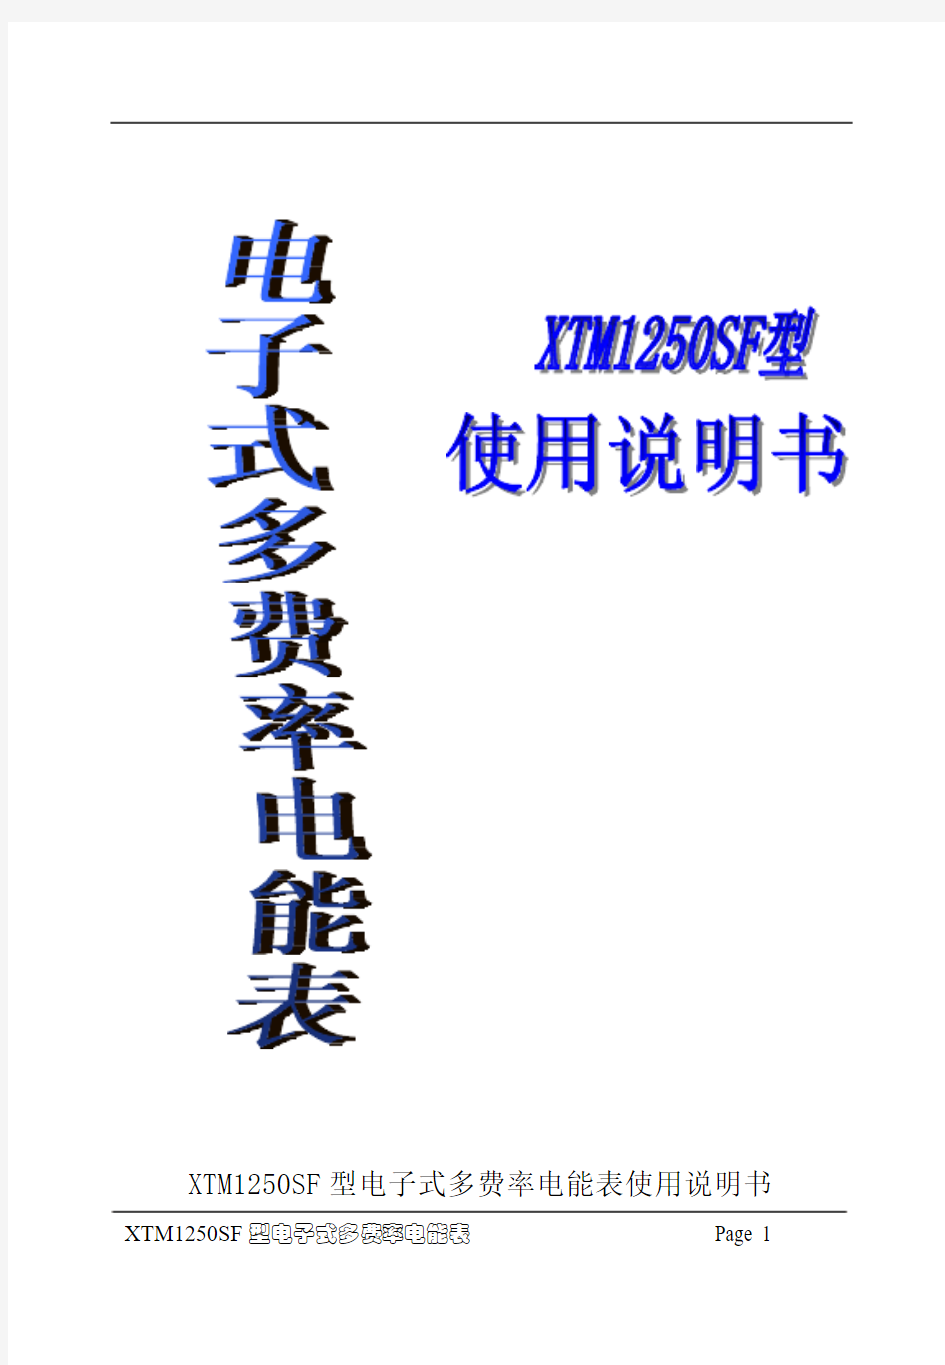 上海人民 科陆 柳川 正泰 三相四线多费率电子式电度表中文使用说明书(三相7P导轨表)